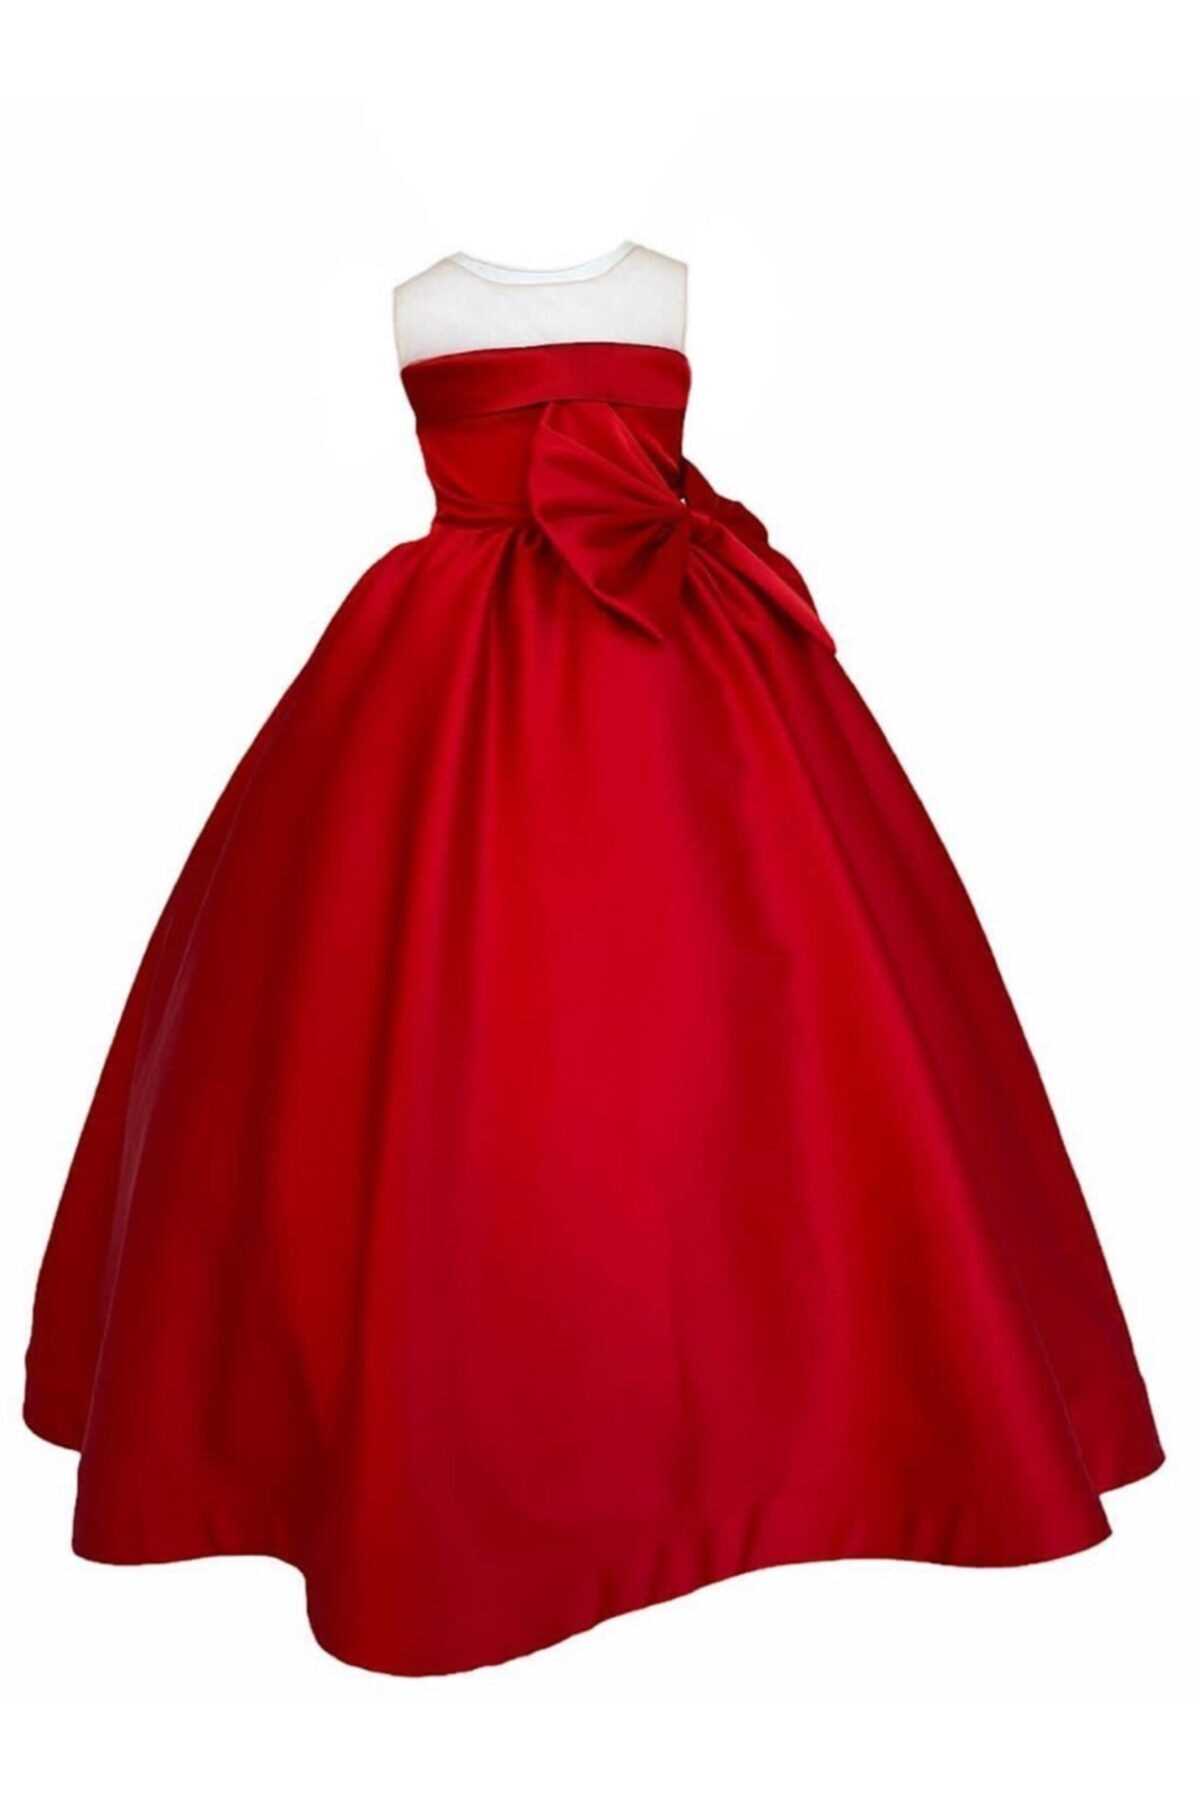 خرید انلاین لباس مجلسی زیبا دخترانه شیک zühre balaban رنگ قرمز ty103646196